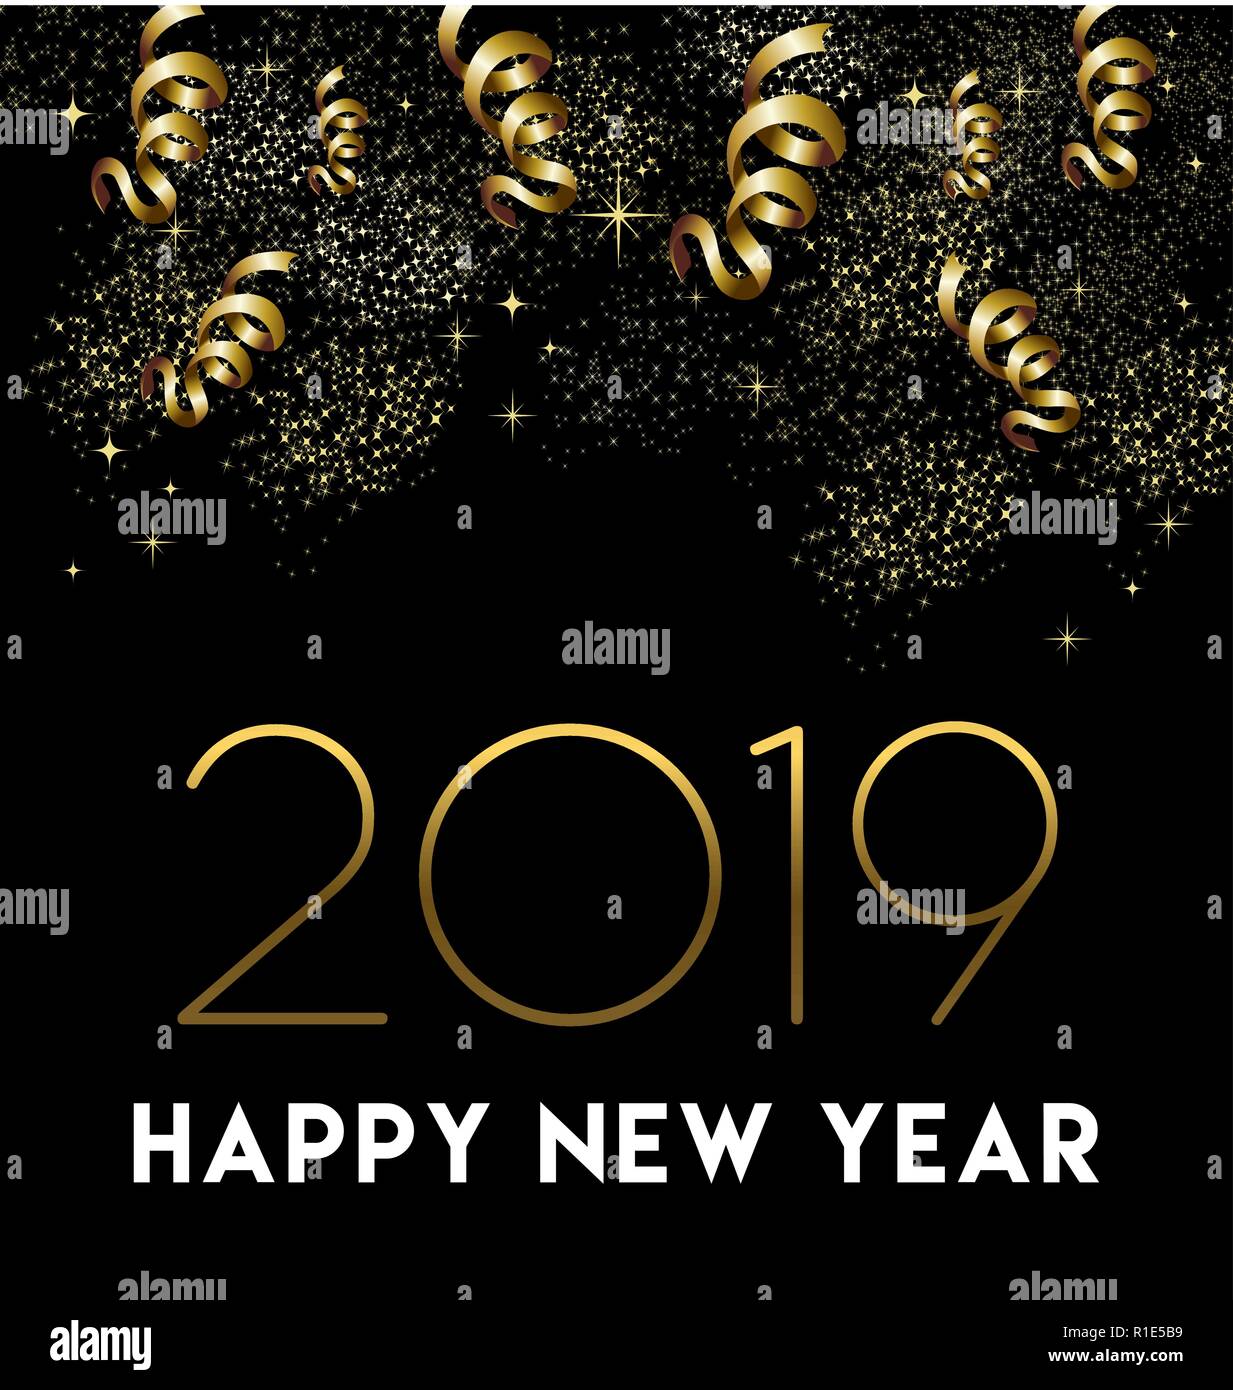 Frohes Neues Jahr 2019 Grußkarten-Design mit gold Konfetti und Party Feier Dekoration. Stock Vektor